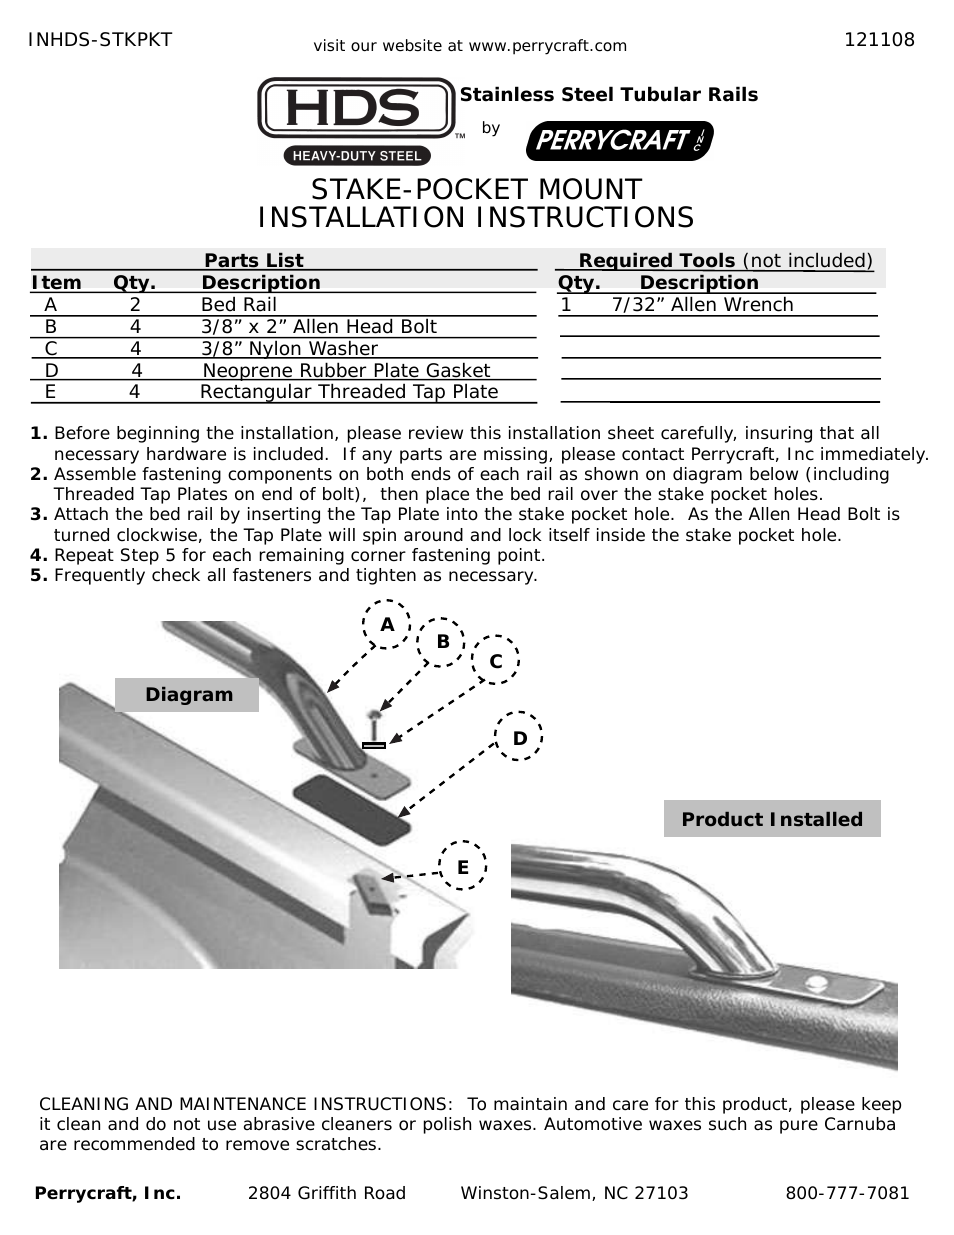 HDS Stake-Pocket Mount Bed Rails